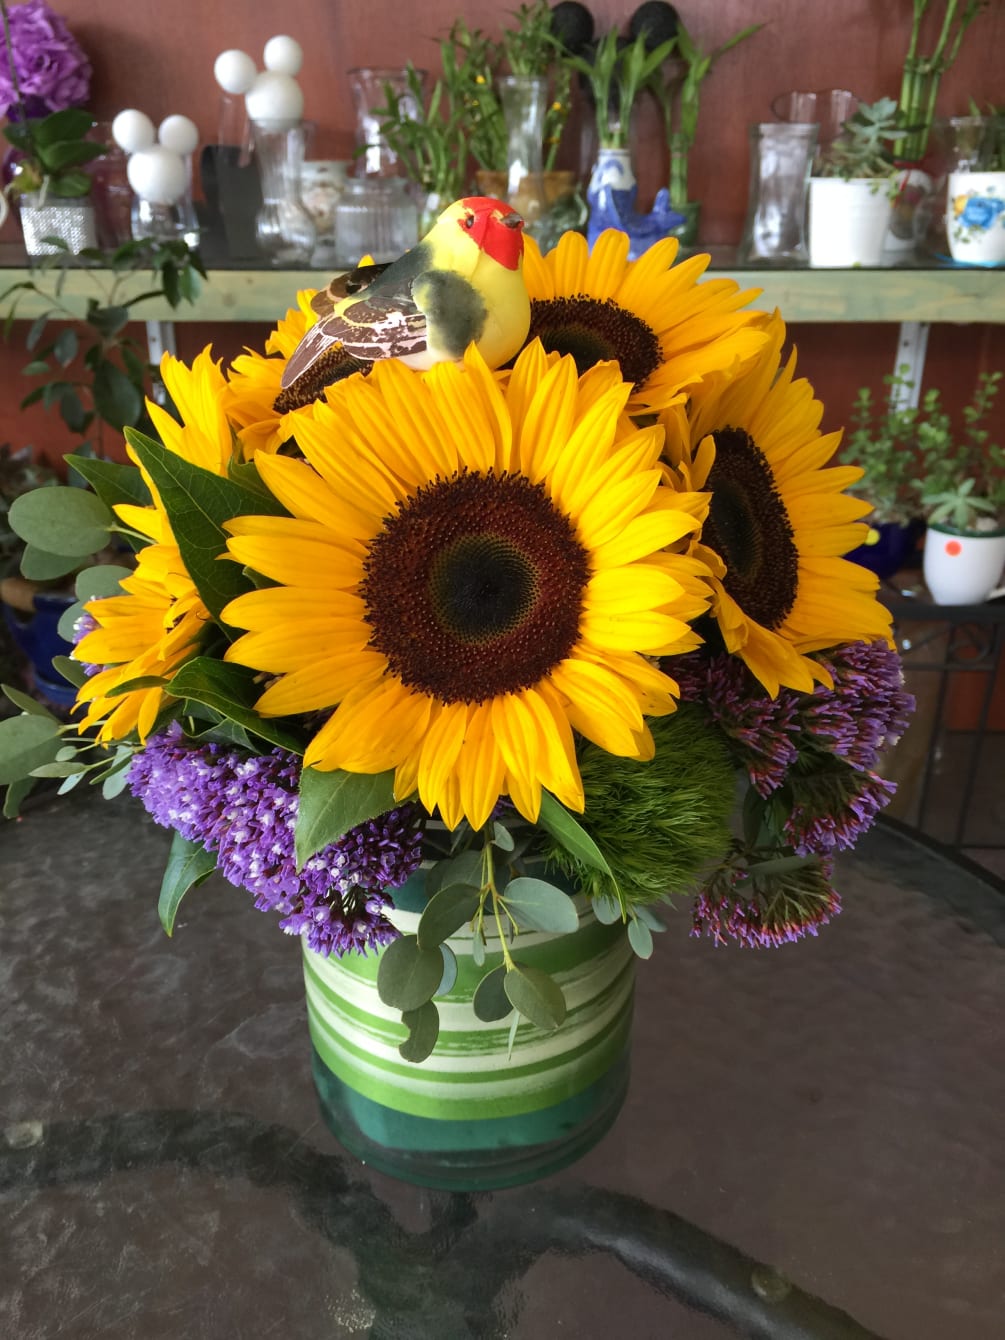 Arrangement of Sunflowers held in a short vase.